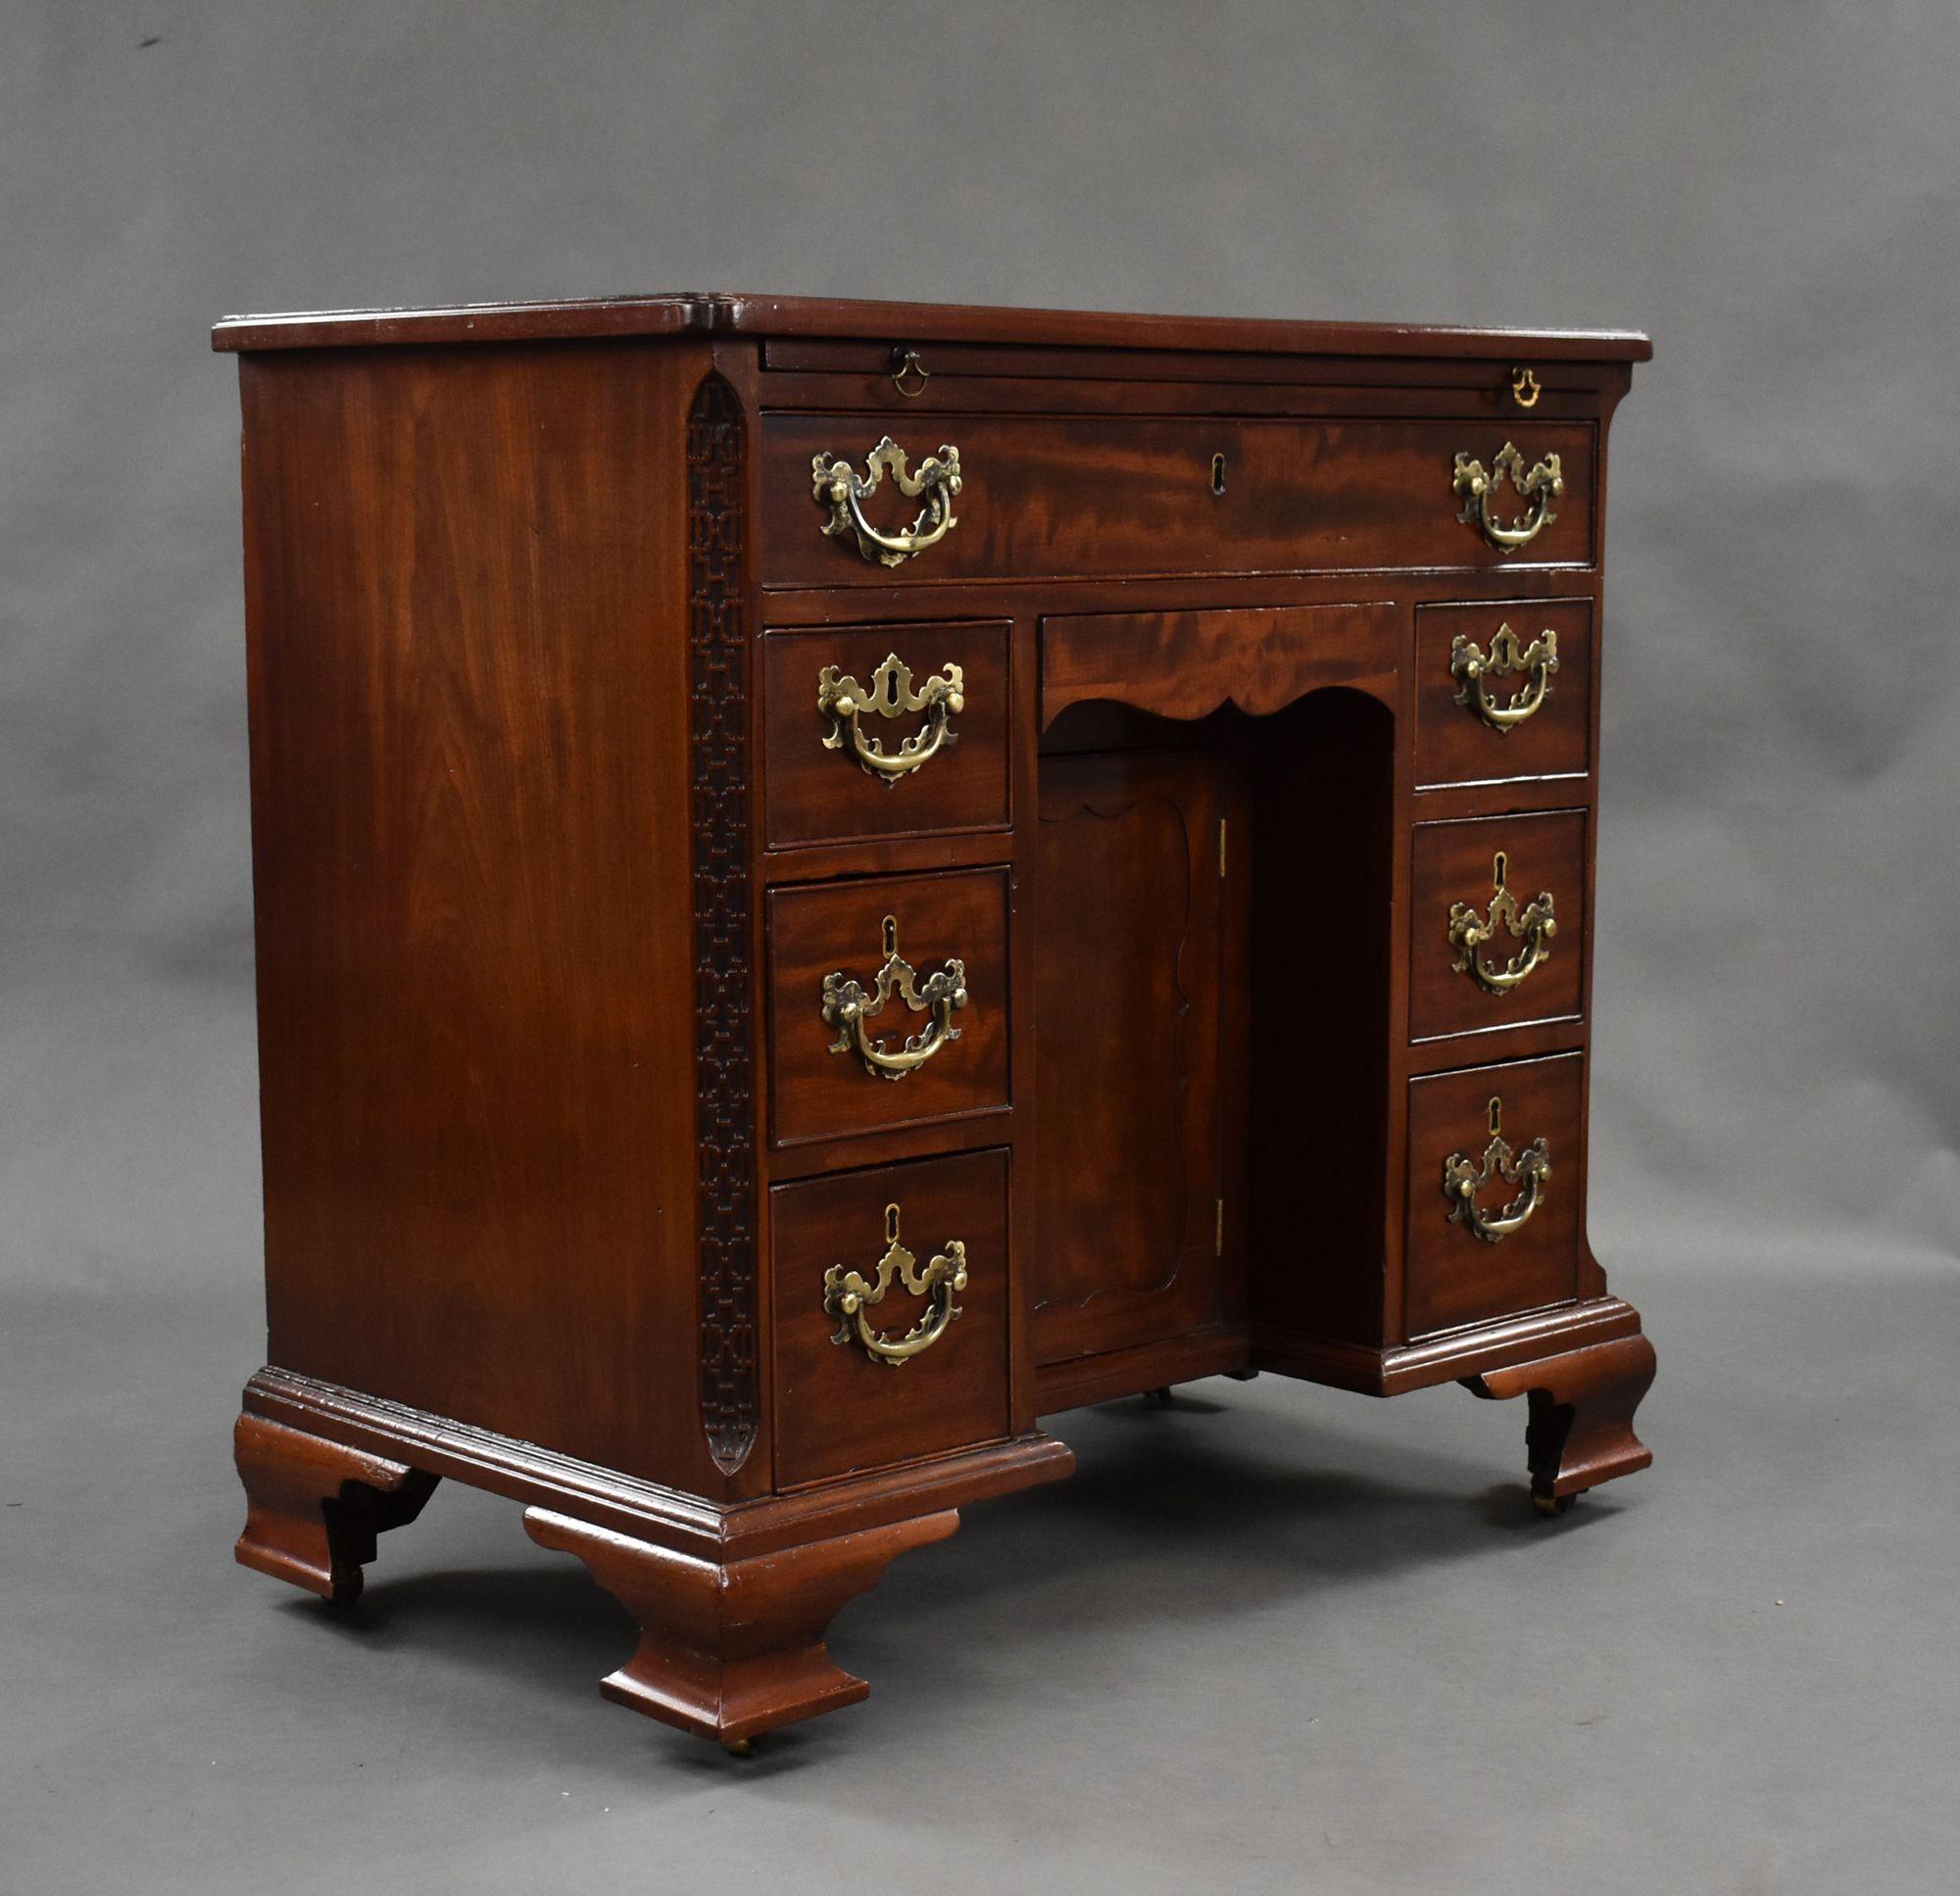 Zum Verkauf steht ein sehr guter Mahagoni-Schreibtisch aus dem 18. Jahrhundert von George III. mit einer gut gemaserten Mahagoni-Arbeitsplatte, darüber eine Bürstenschublade und darunter eine einzelne Schublade. Der Schreibtisch hat einen zentralen